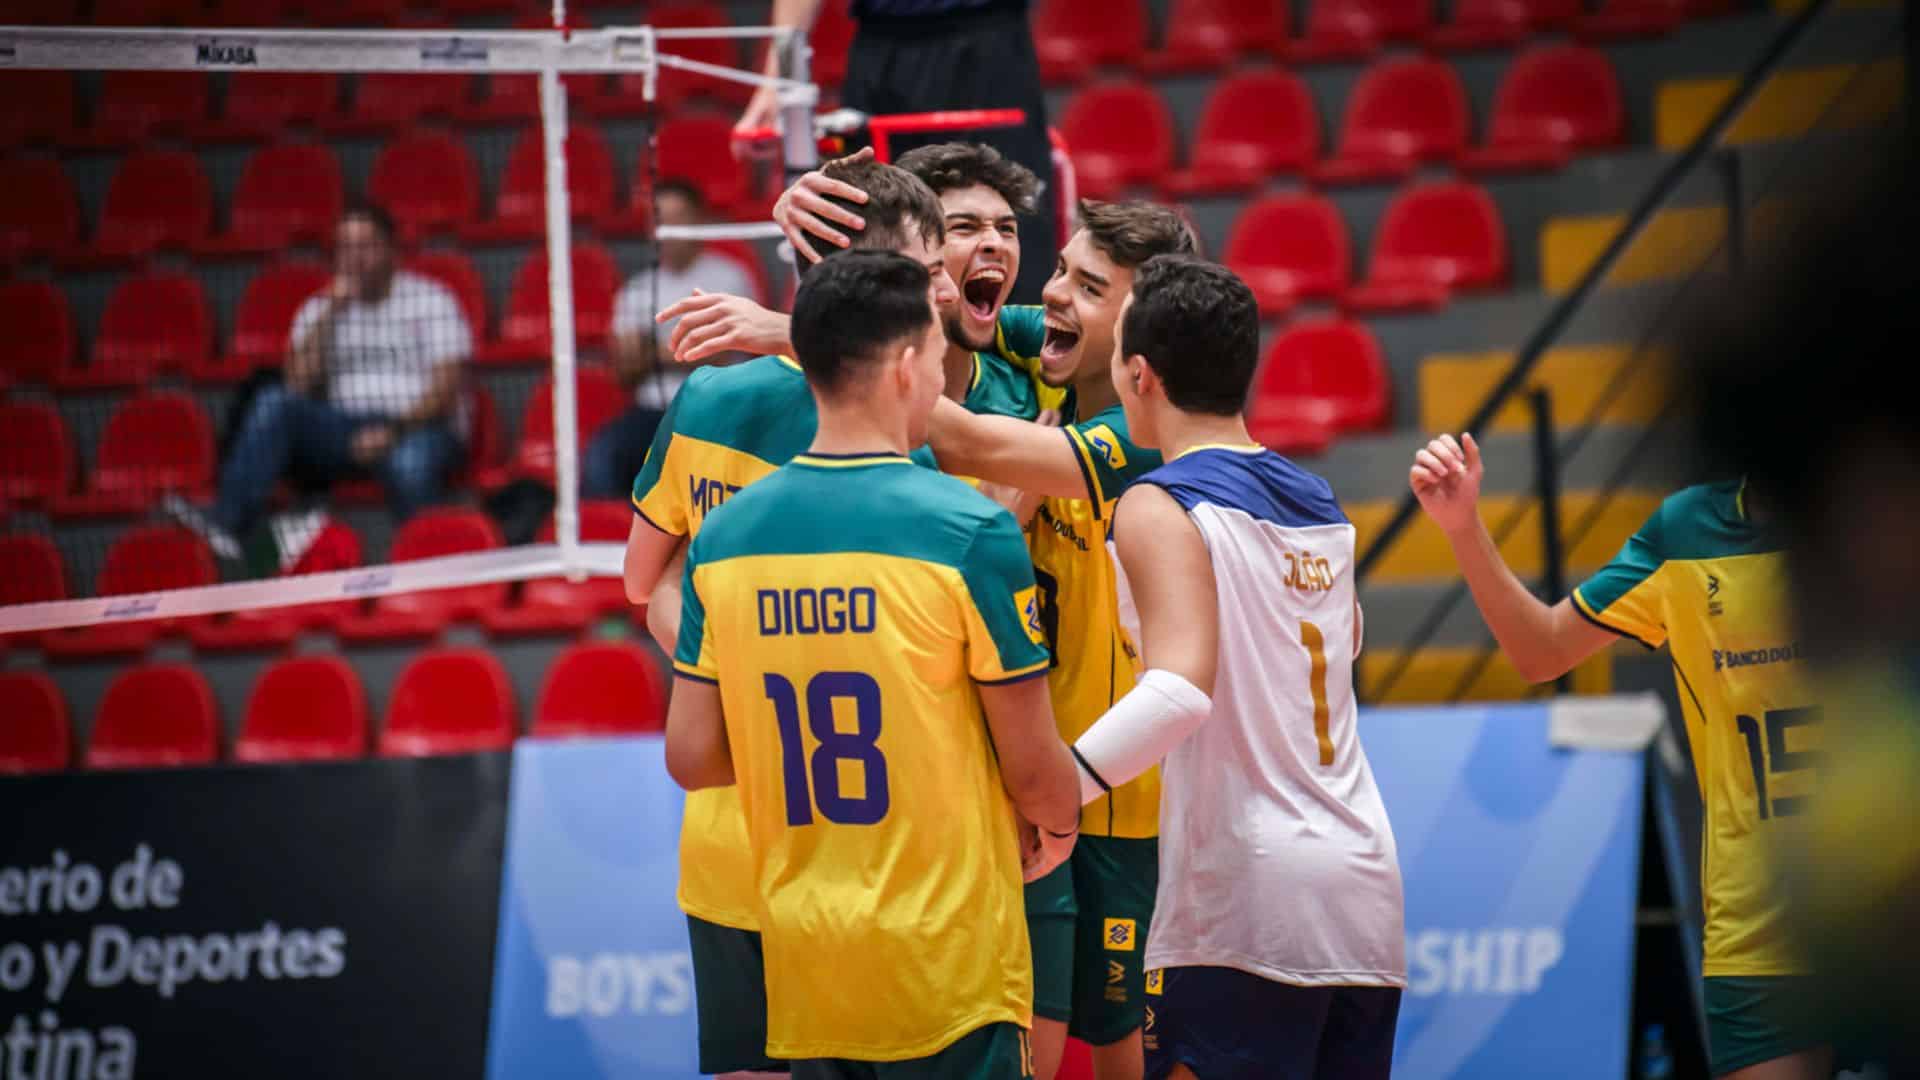 O Brasil venceu o México pela primeira partida do Mundial Sub-19 de vôlei masculino (Foto: Divulgação/FIVB/VolleyballWorld)